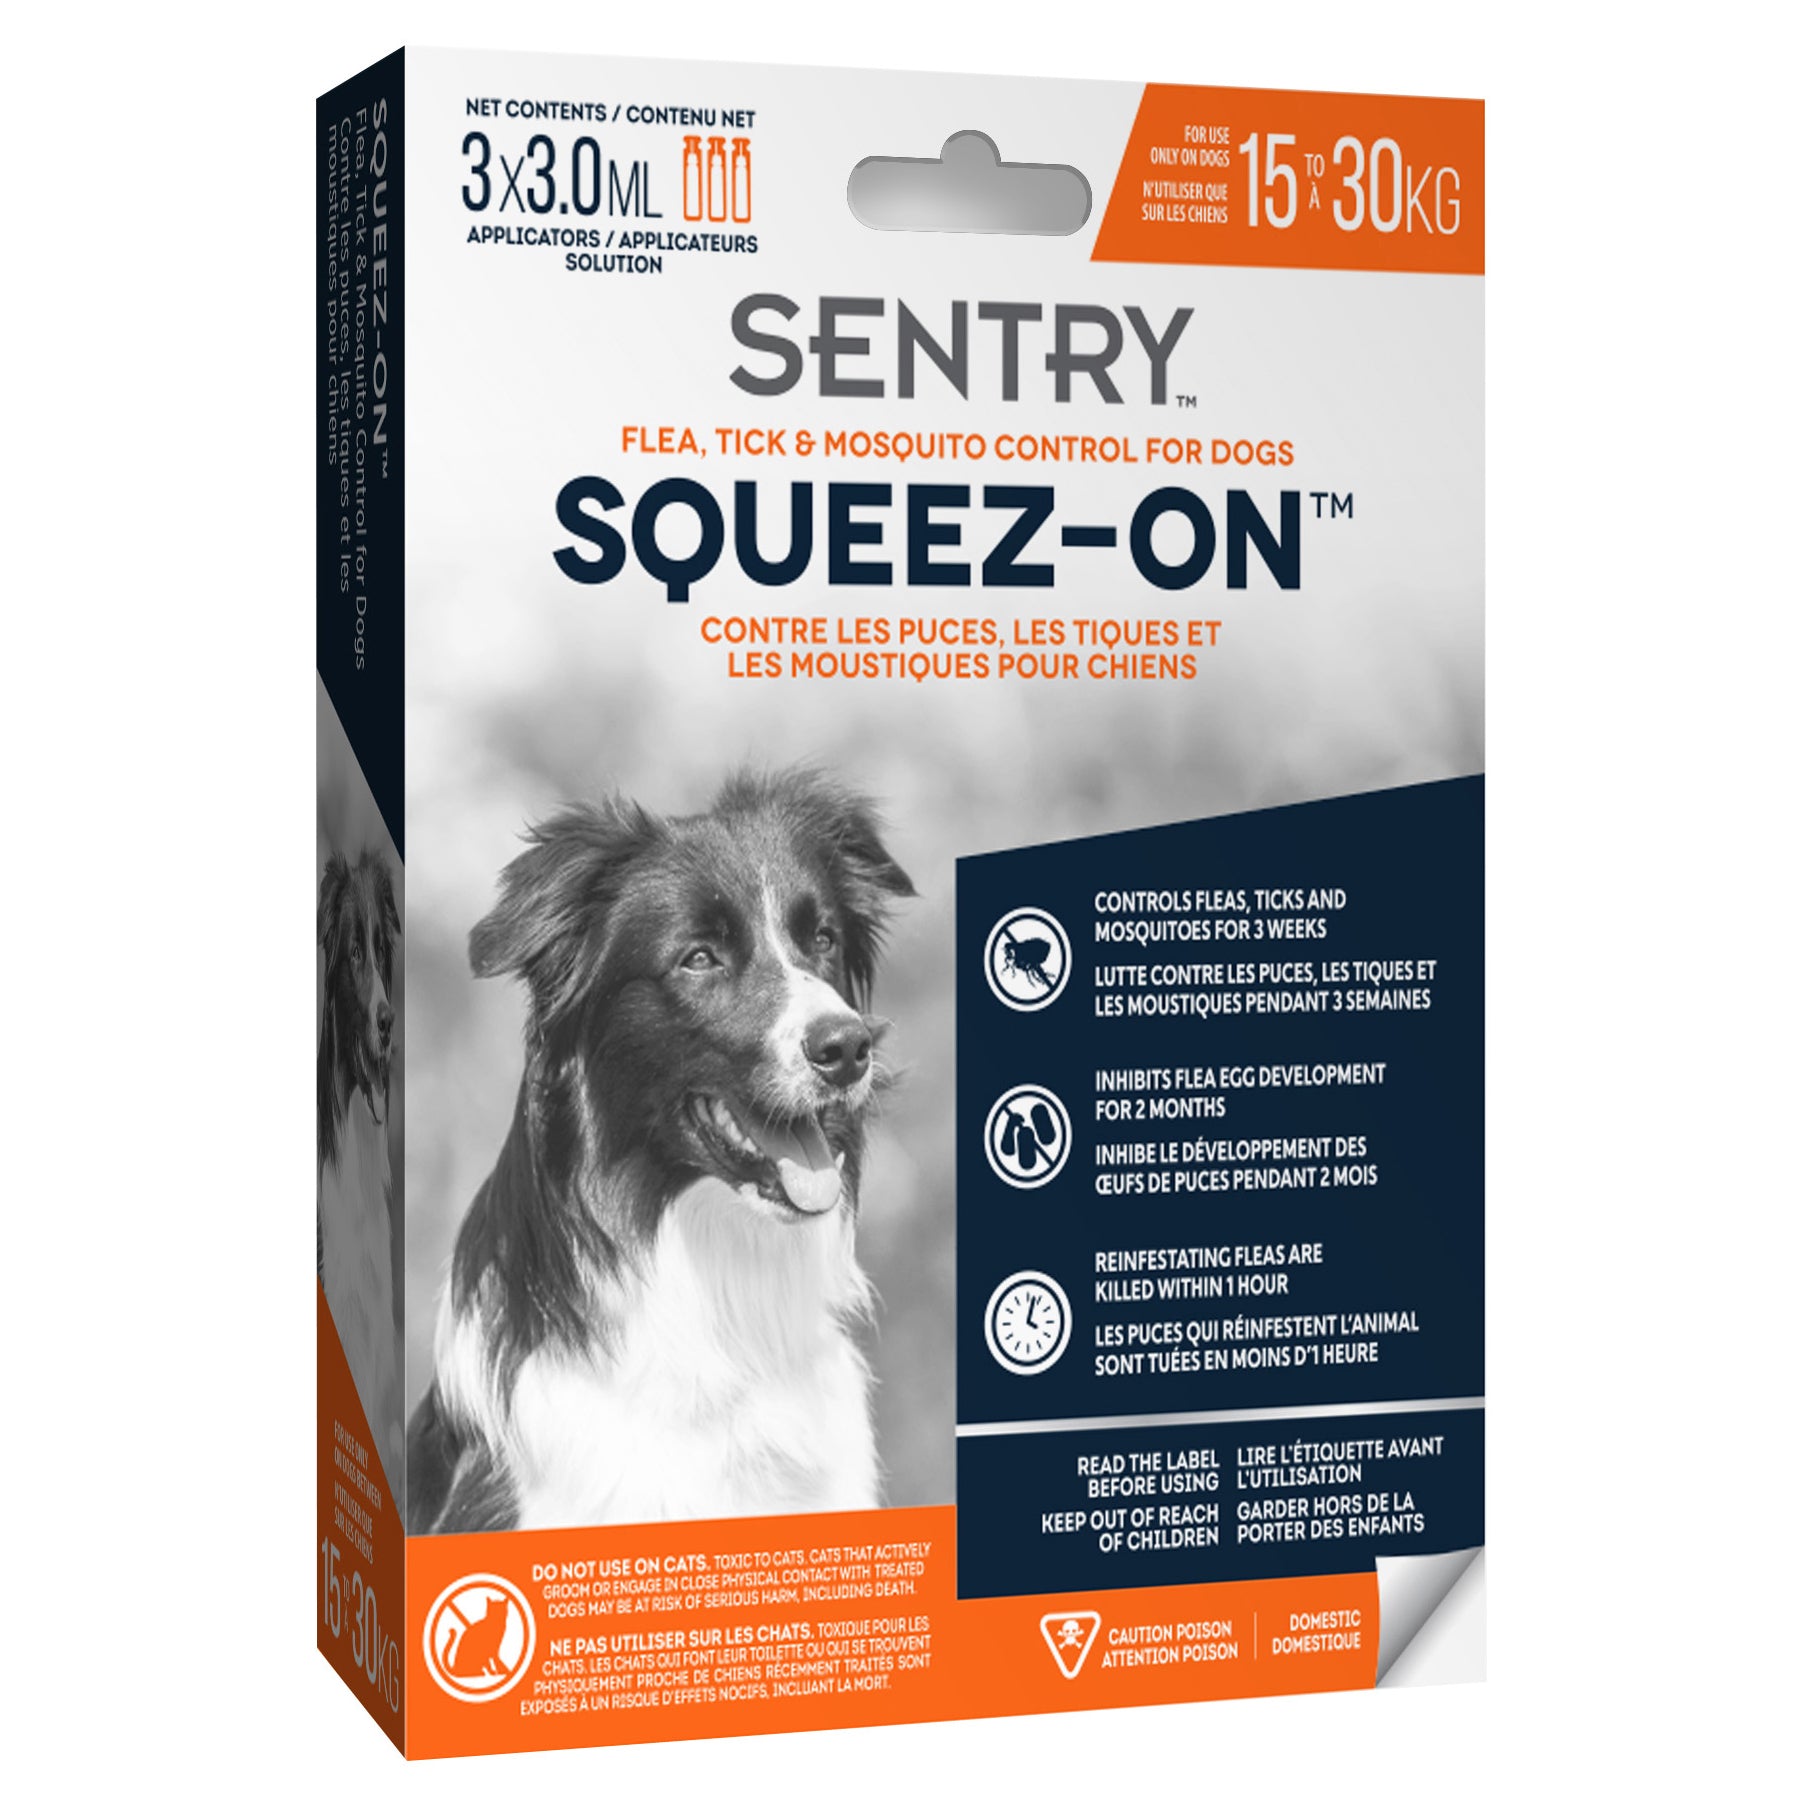 Tube à presser Sentry Sergeant’s pour l’élimination des puces, des tiques et des moustiques sur les chiens pesant entre 15 et 30kg